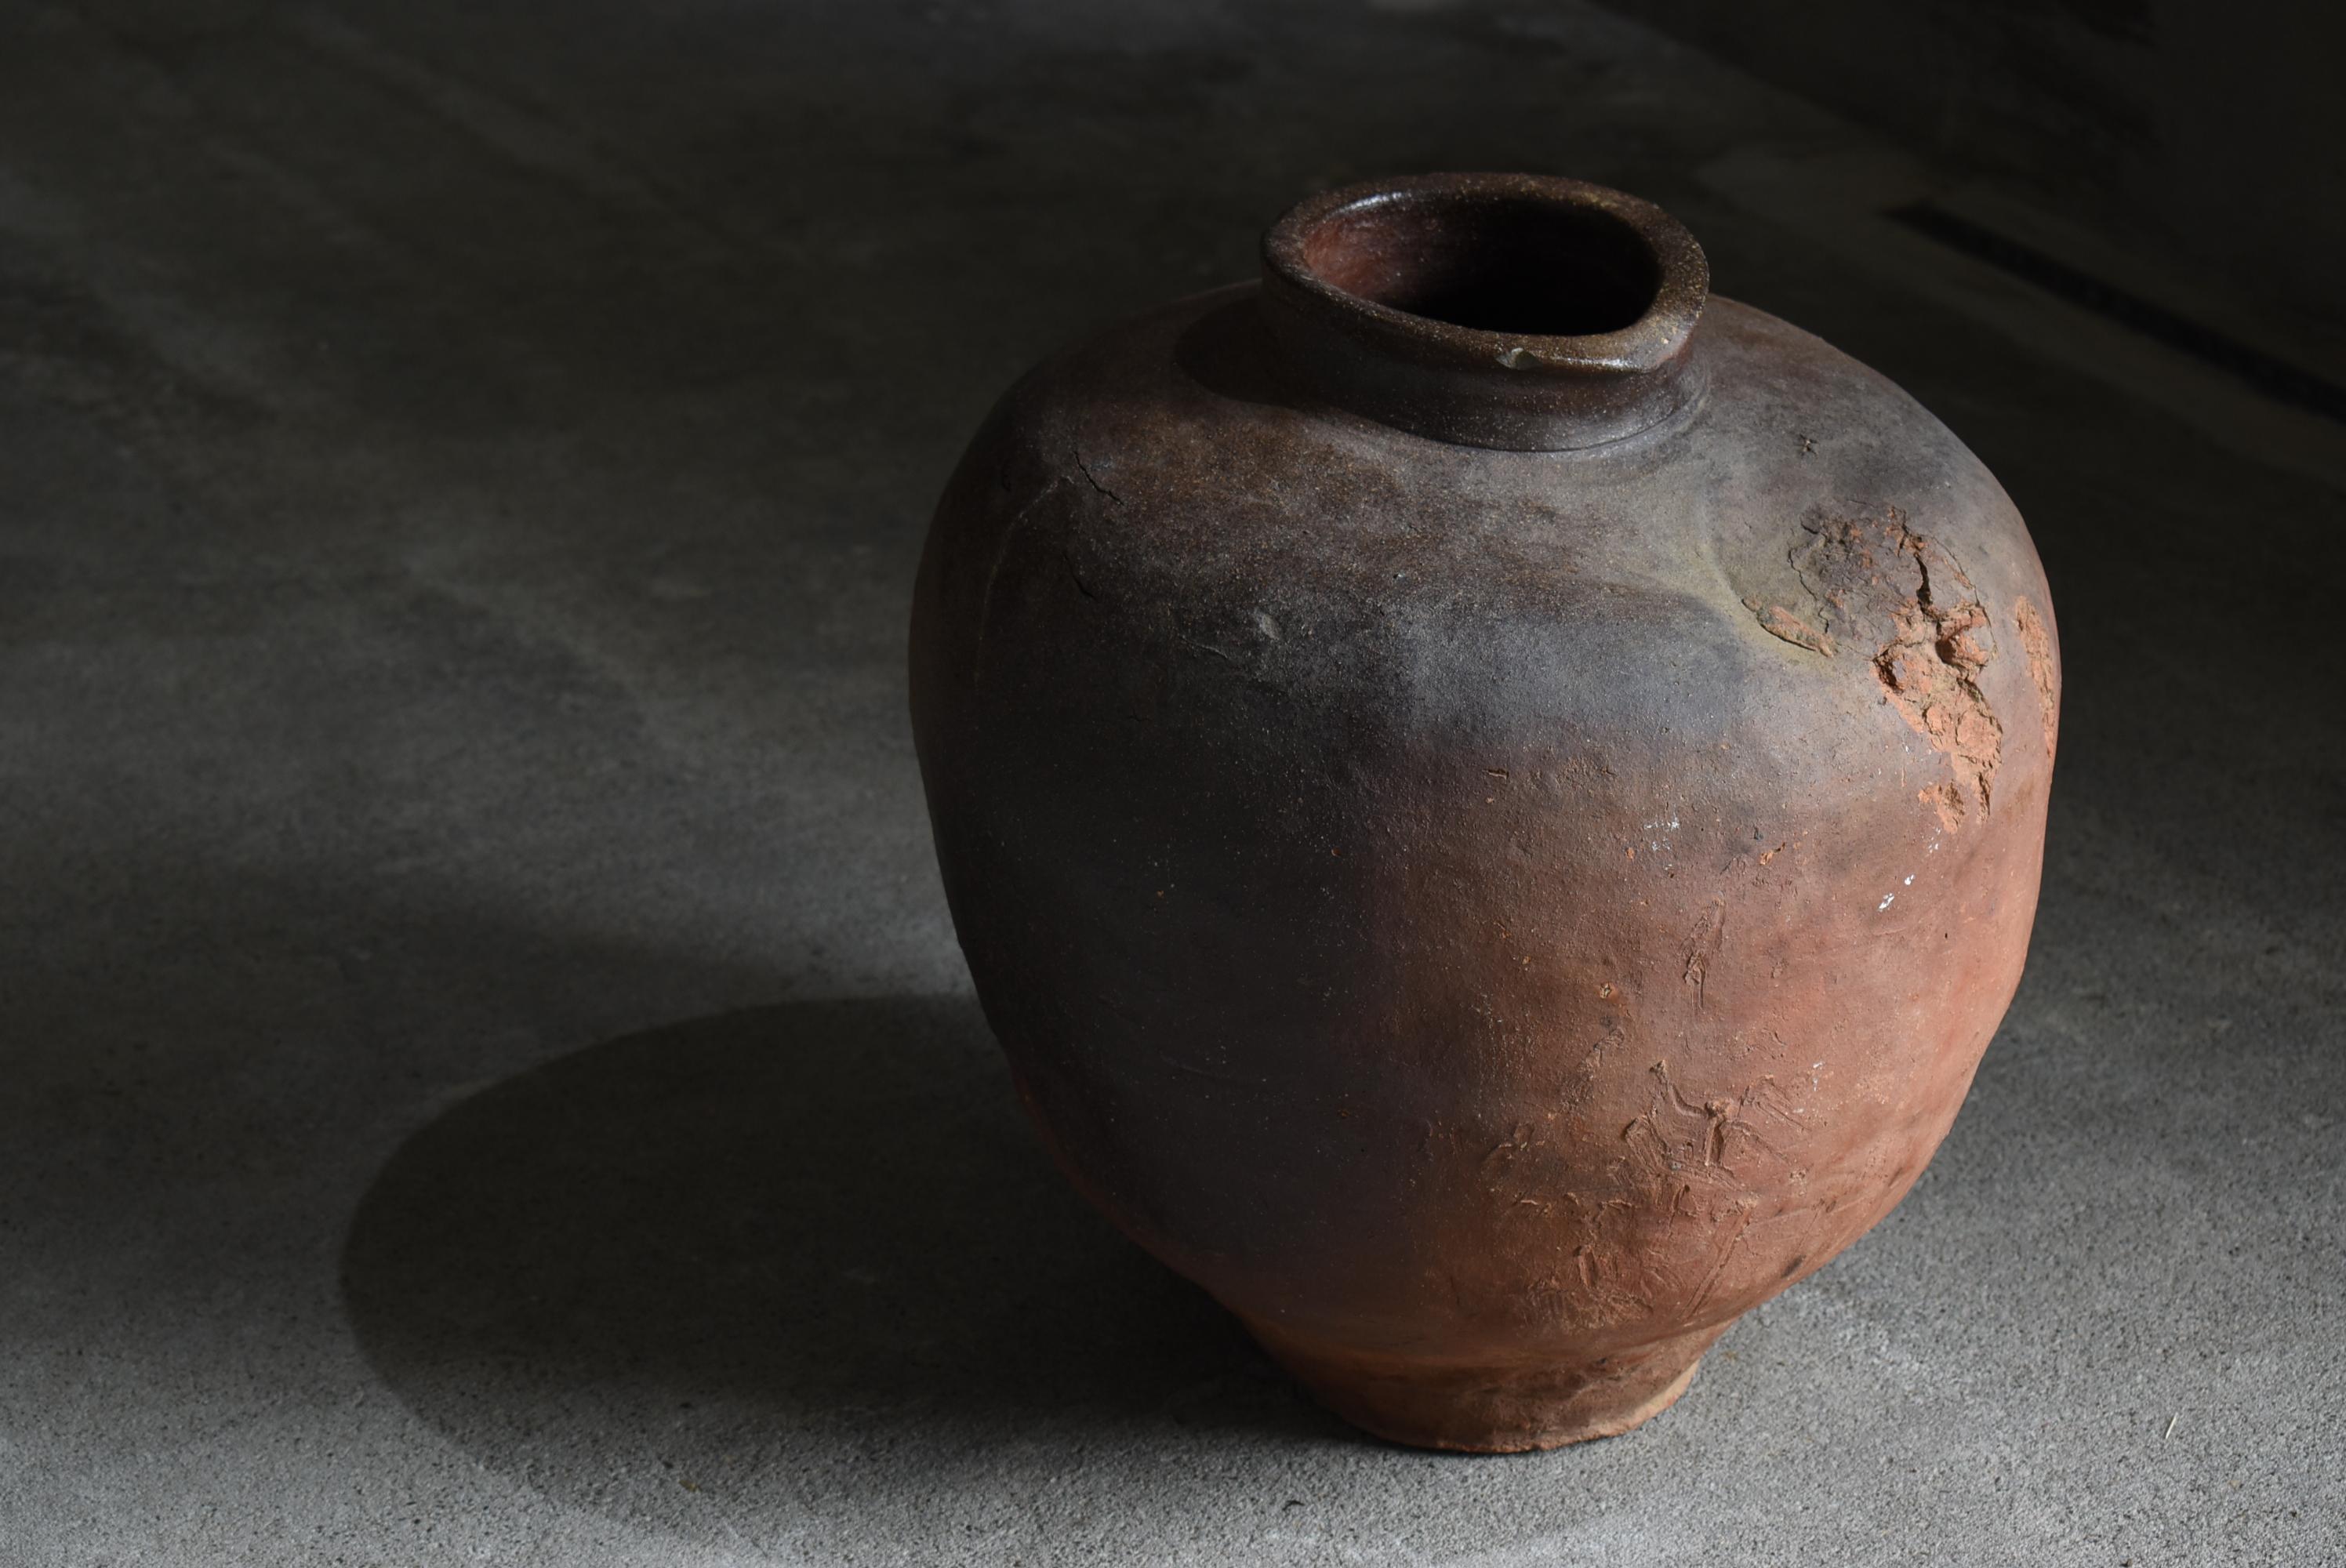 Japanese Antique Pottery 1700s-1800s/Tsubo Flower Vase Vessel Wabisabi Jar 7